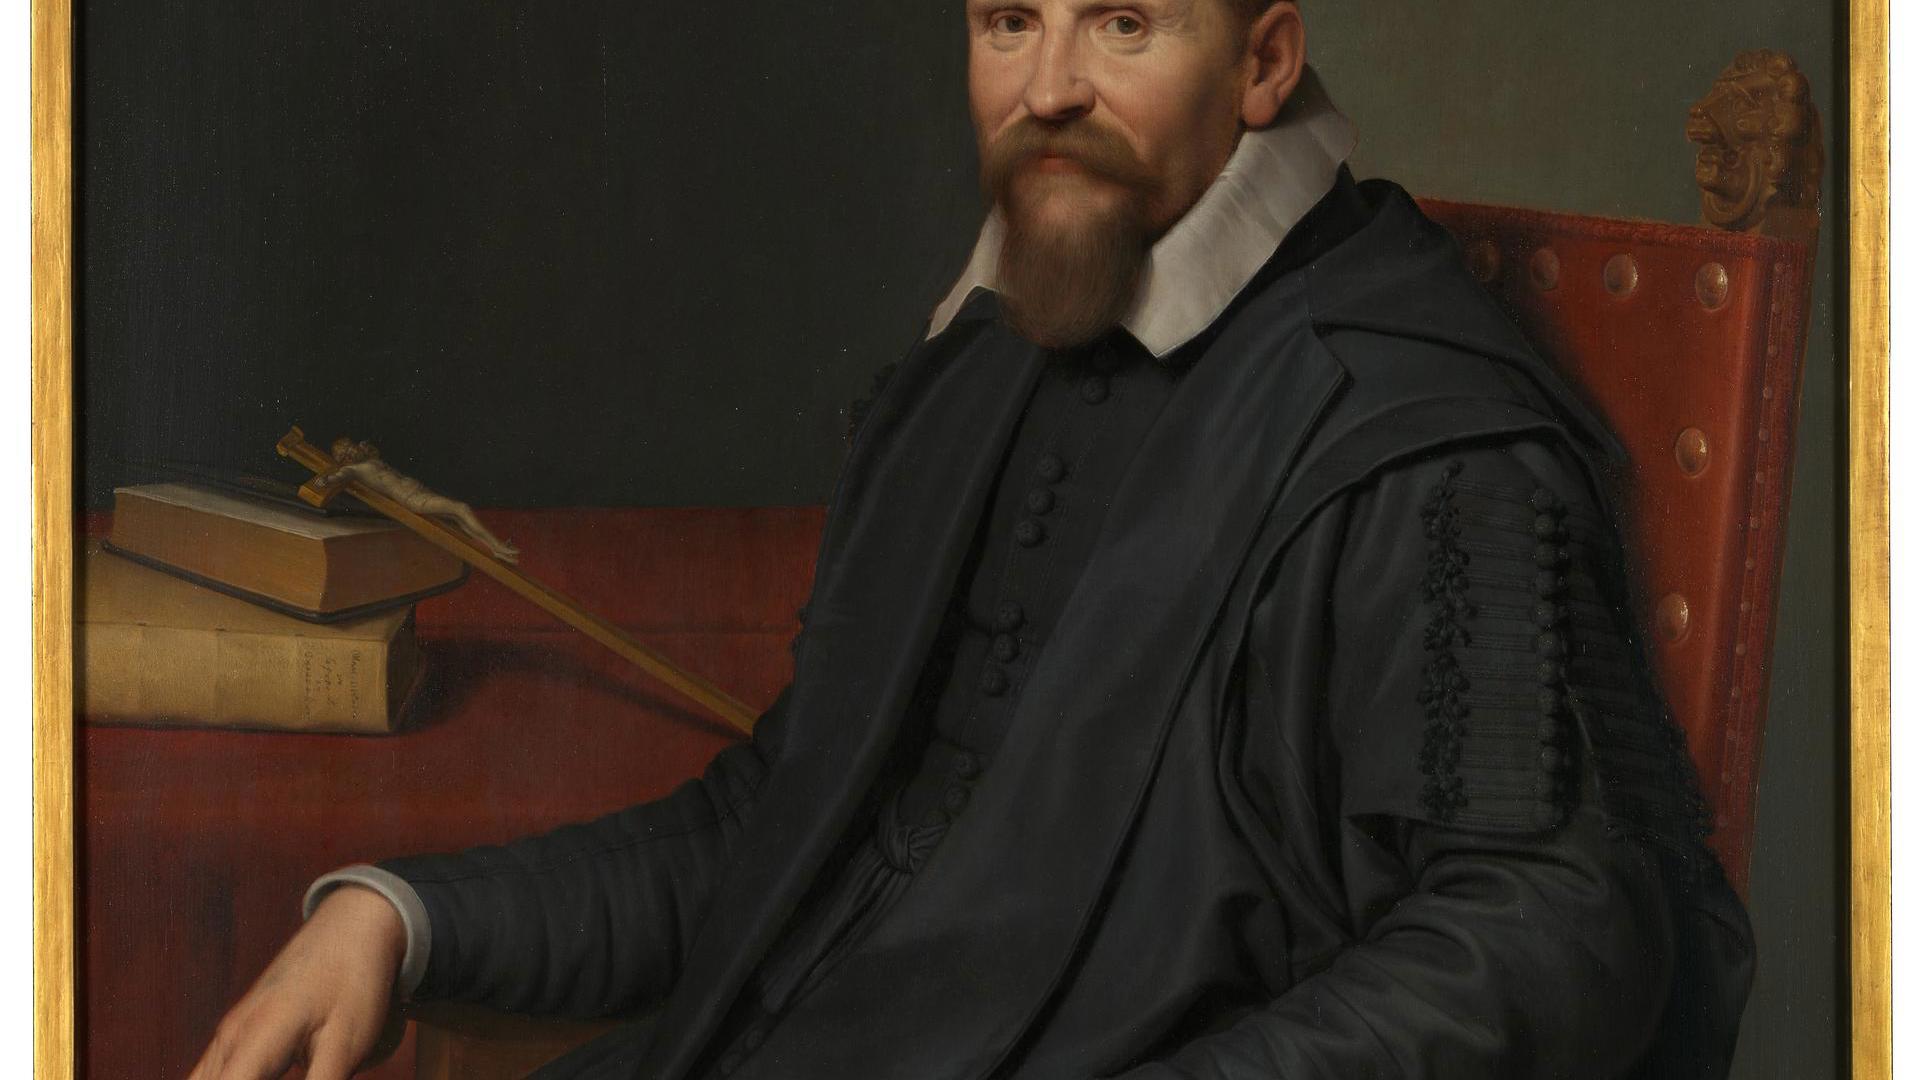 Portrait of Suitbertus Purmerent by Willem van der Vliet